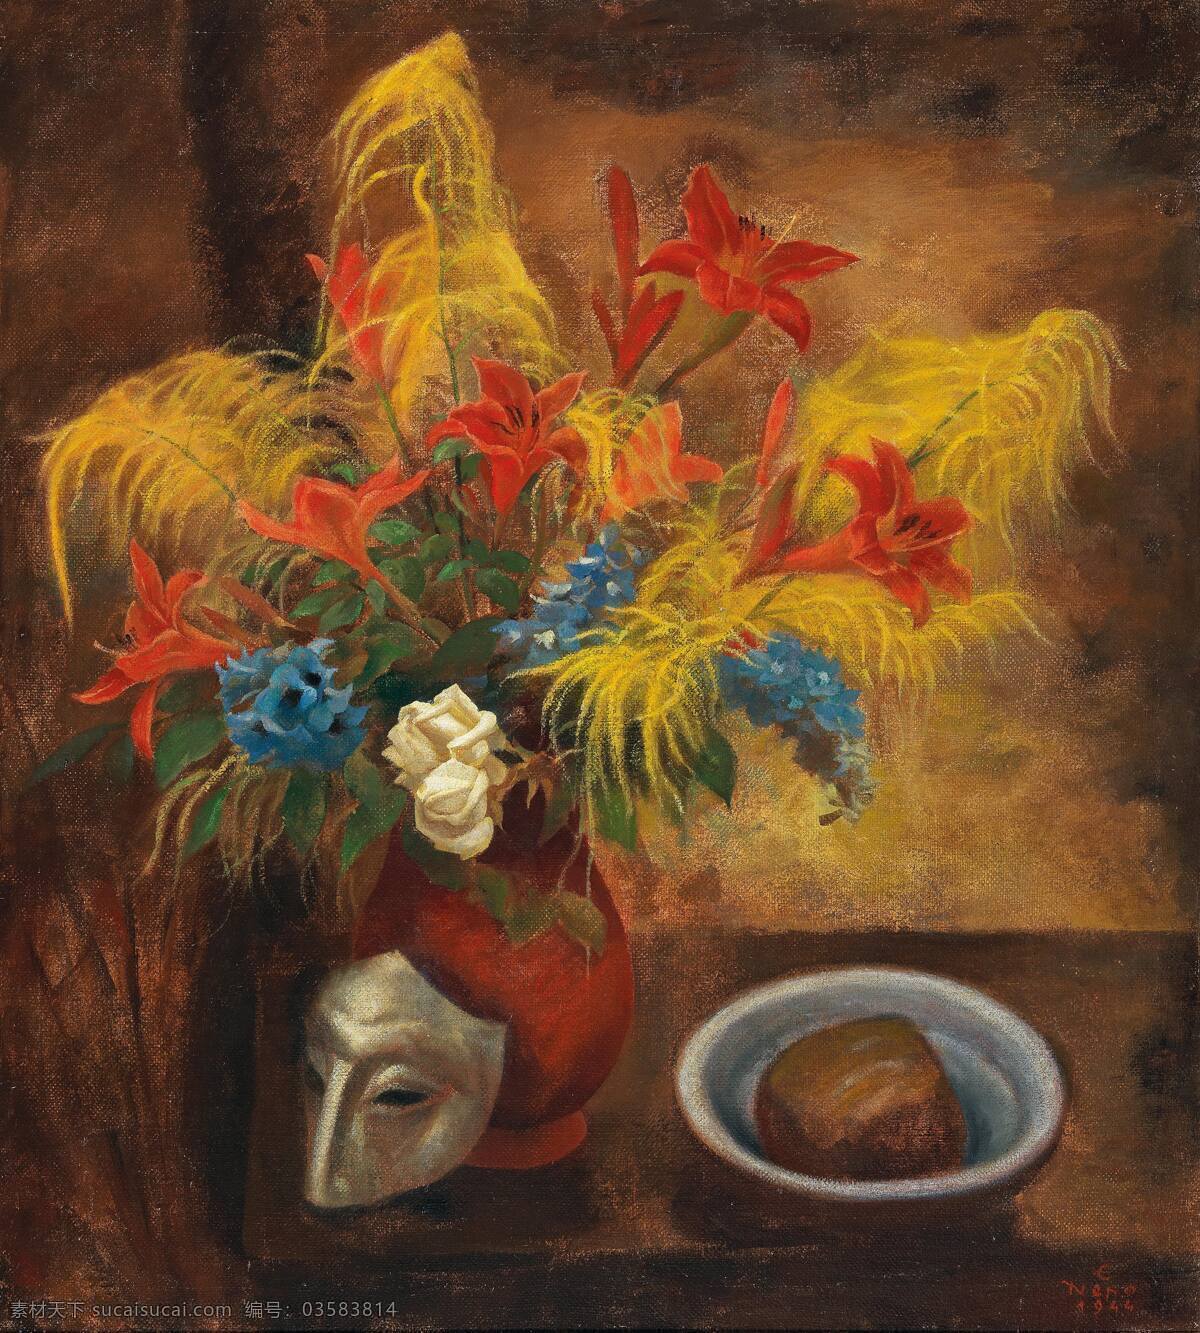 静物鲜花 假面 混搭鲜花 面包 碗 20世纪油画 油画 文化艺术 绘画书法